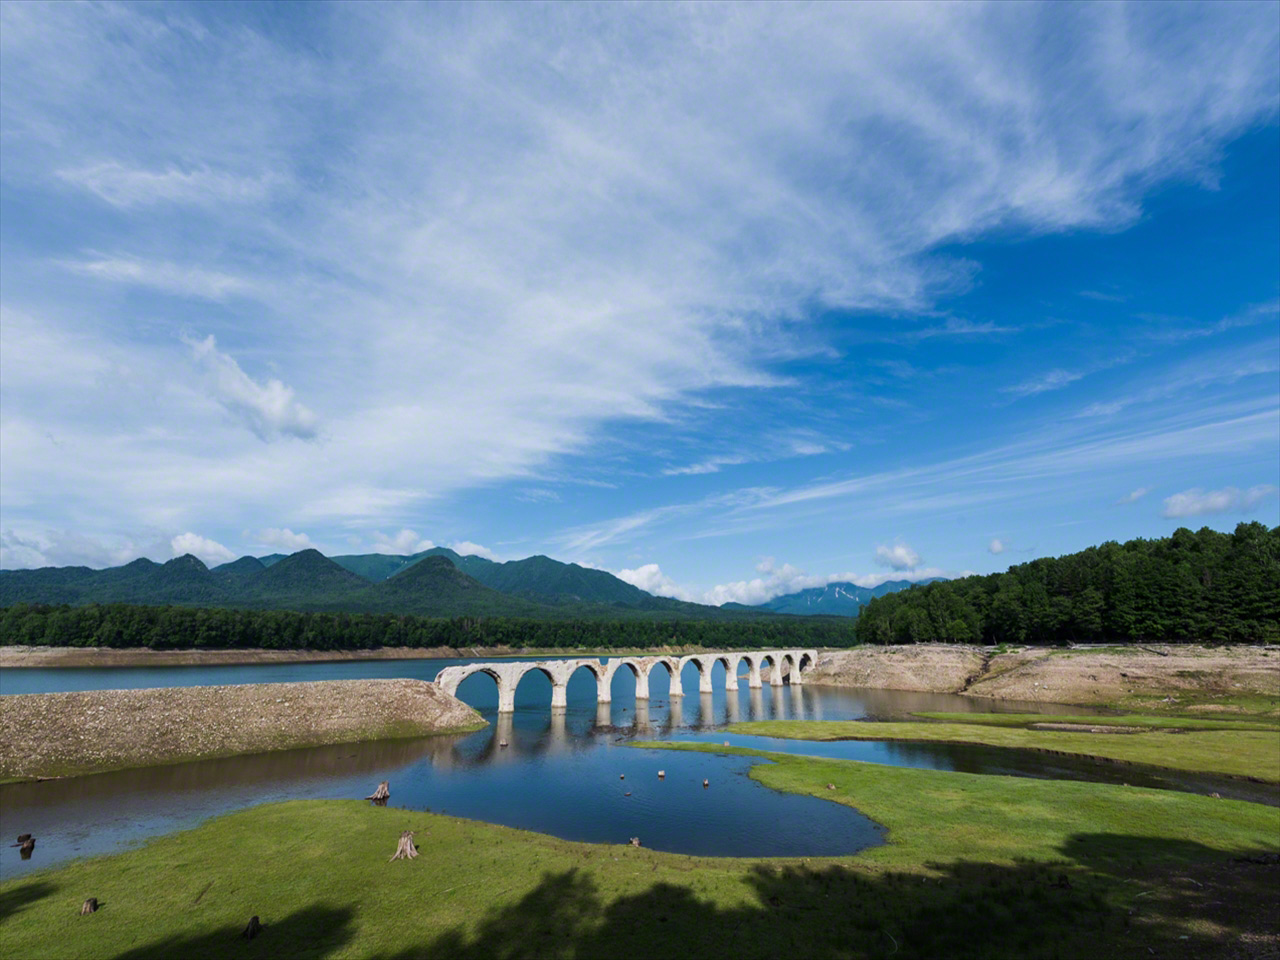 Juillet. Sous le ciel estival pur de Hokkaidô, le pont se fond harmonieusement dans le paysage environnant.